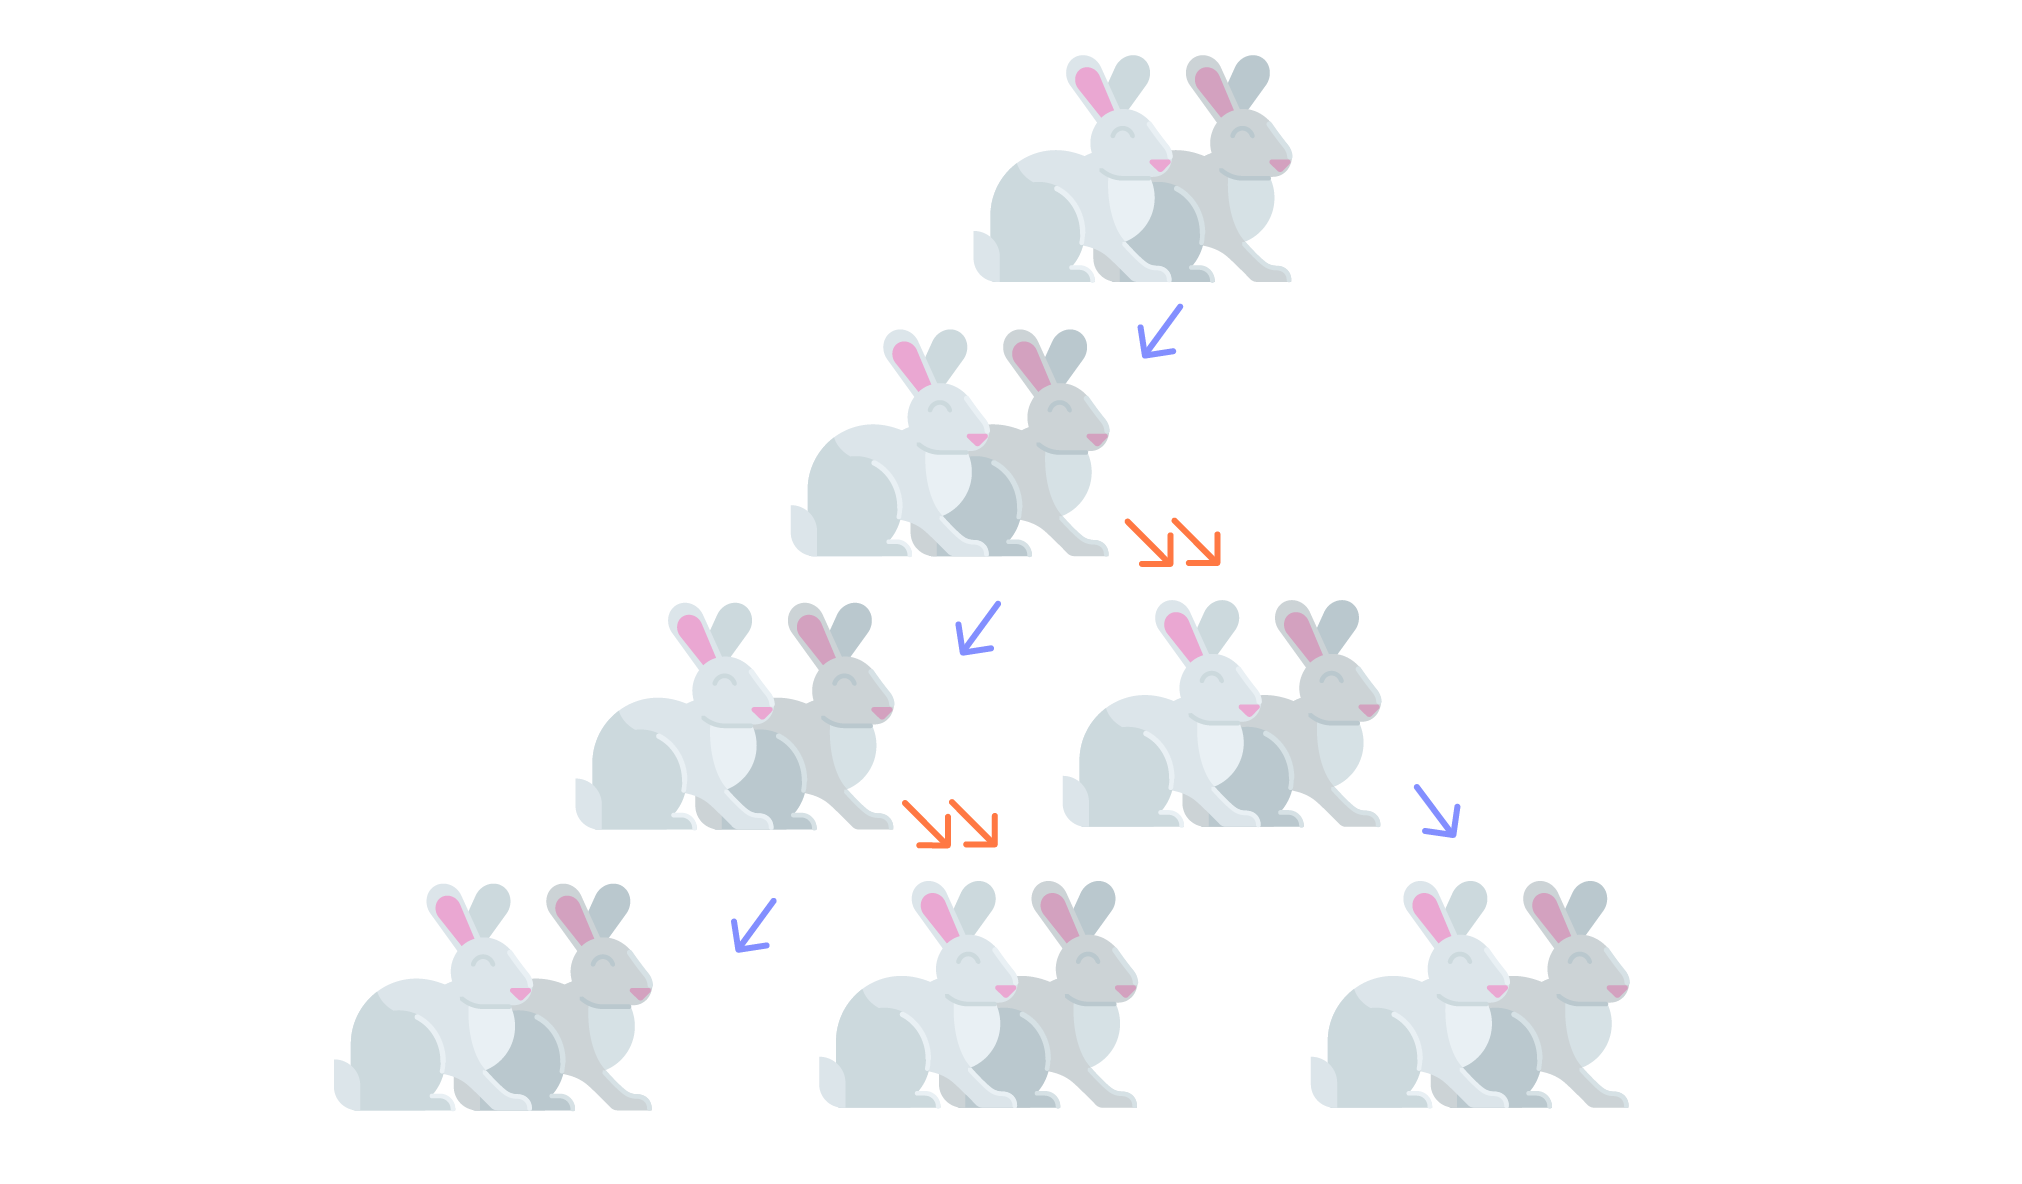 схематическая иллюстрация к задаче Фибоначчи о размножении кроликов